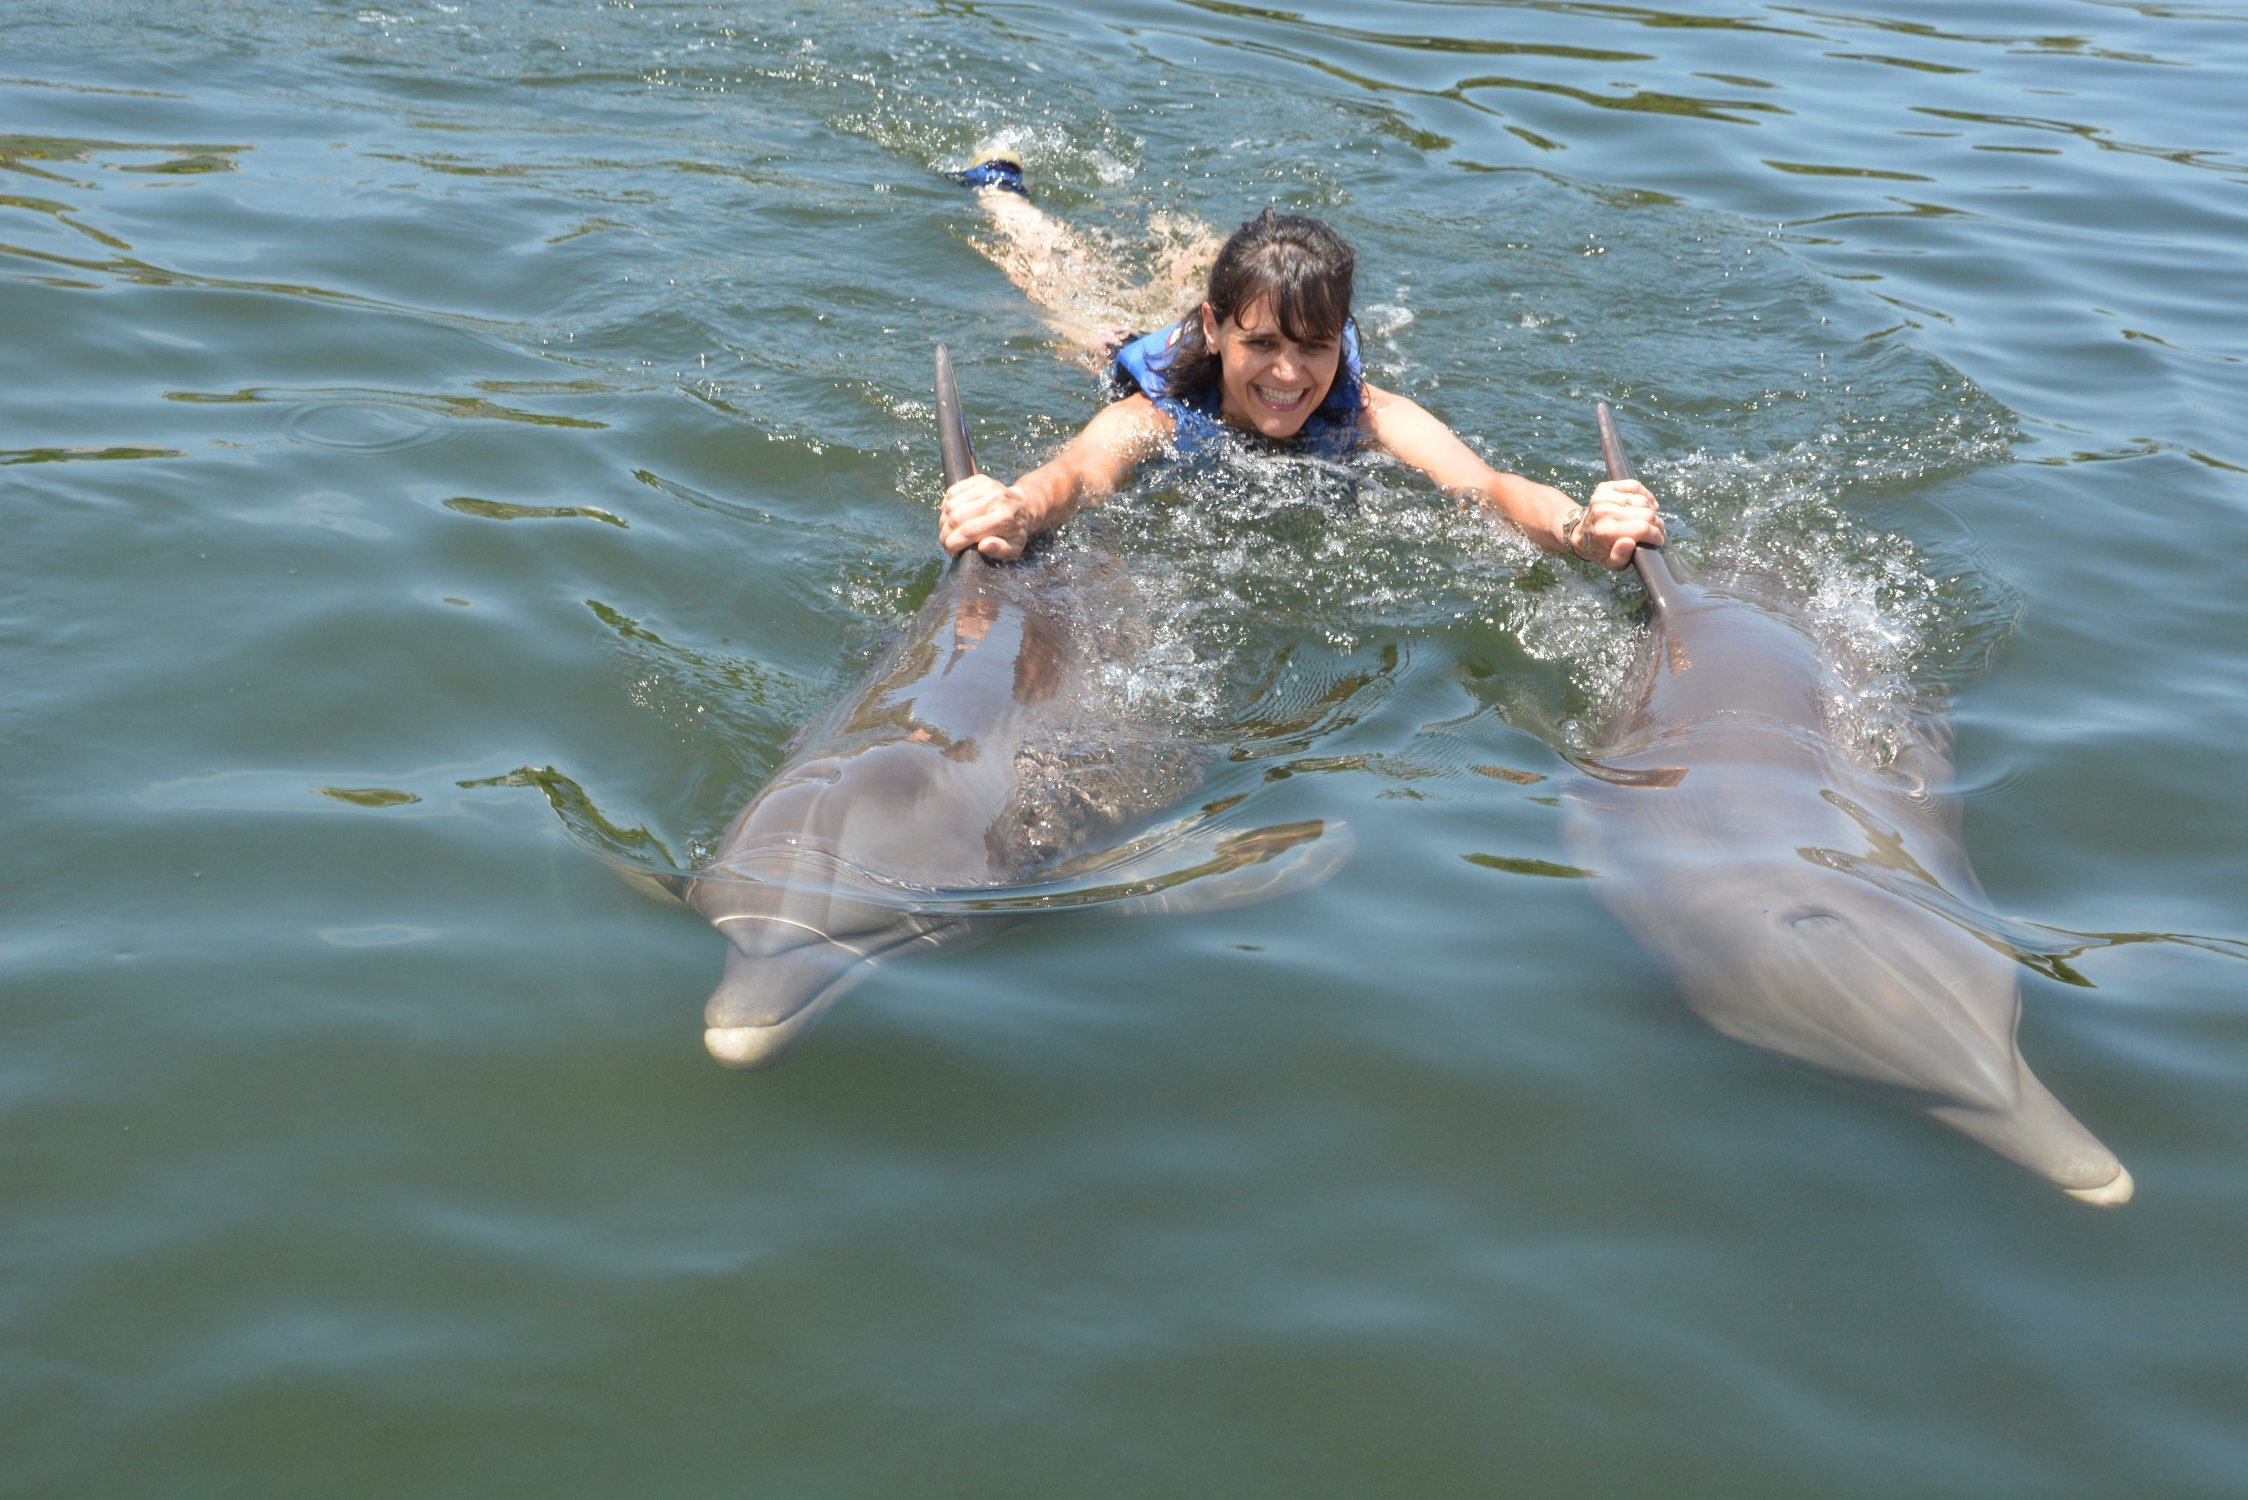 Nuotando coi delfini